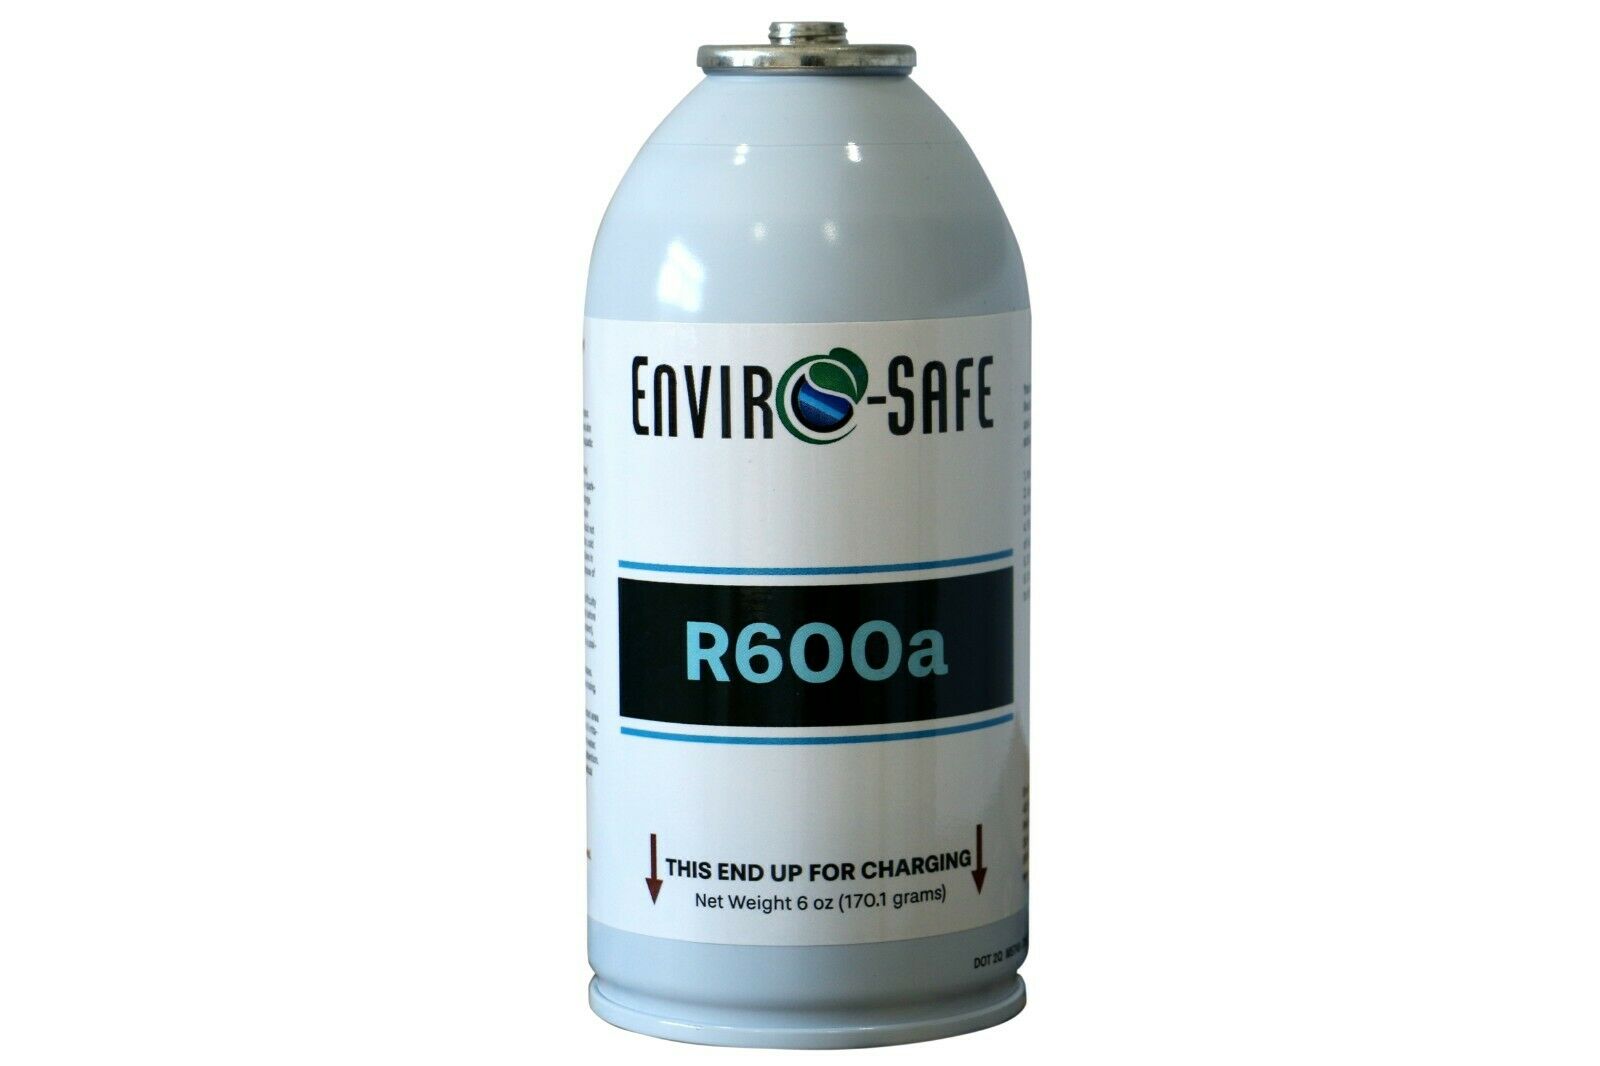 Enviro-safe R600a 6 Oz Can #8050a